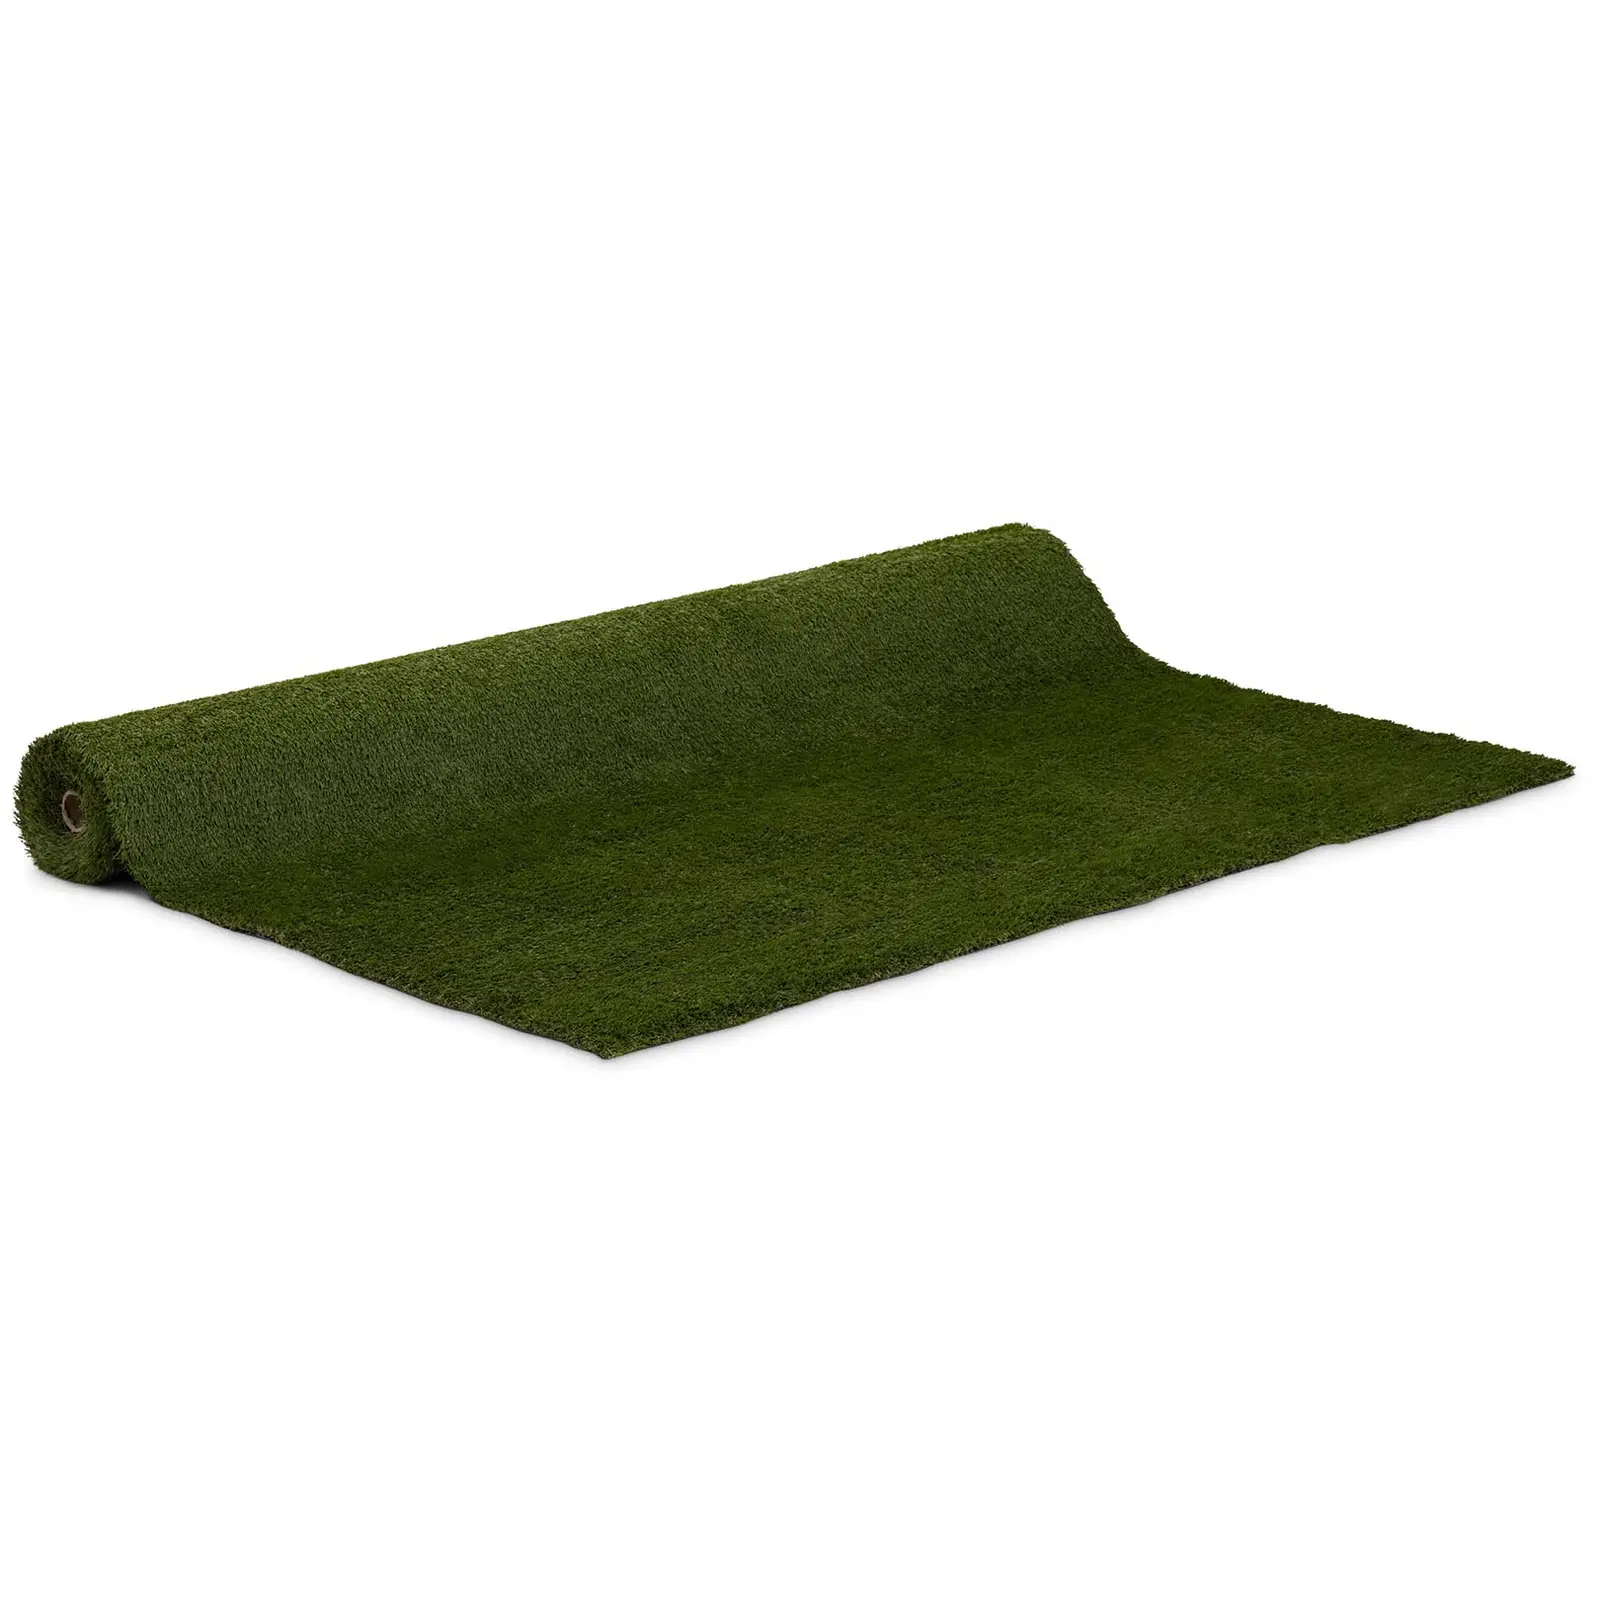 Umelý trávnik - 403 x 200 cm - výška: 30 mm - hustota stehu: 20/10 cm - odolný proti UV žiareniu